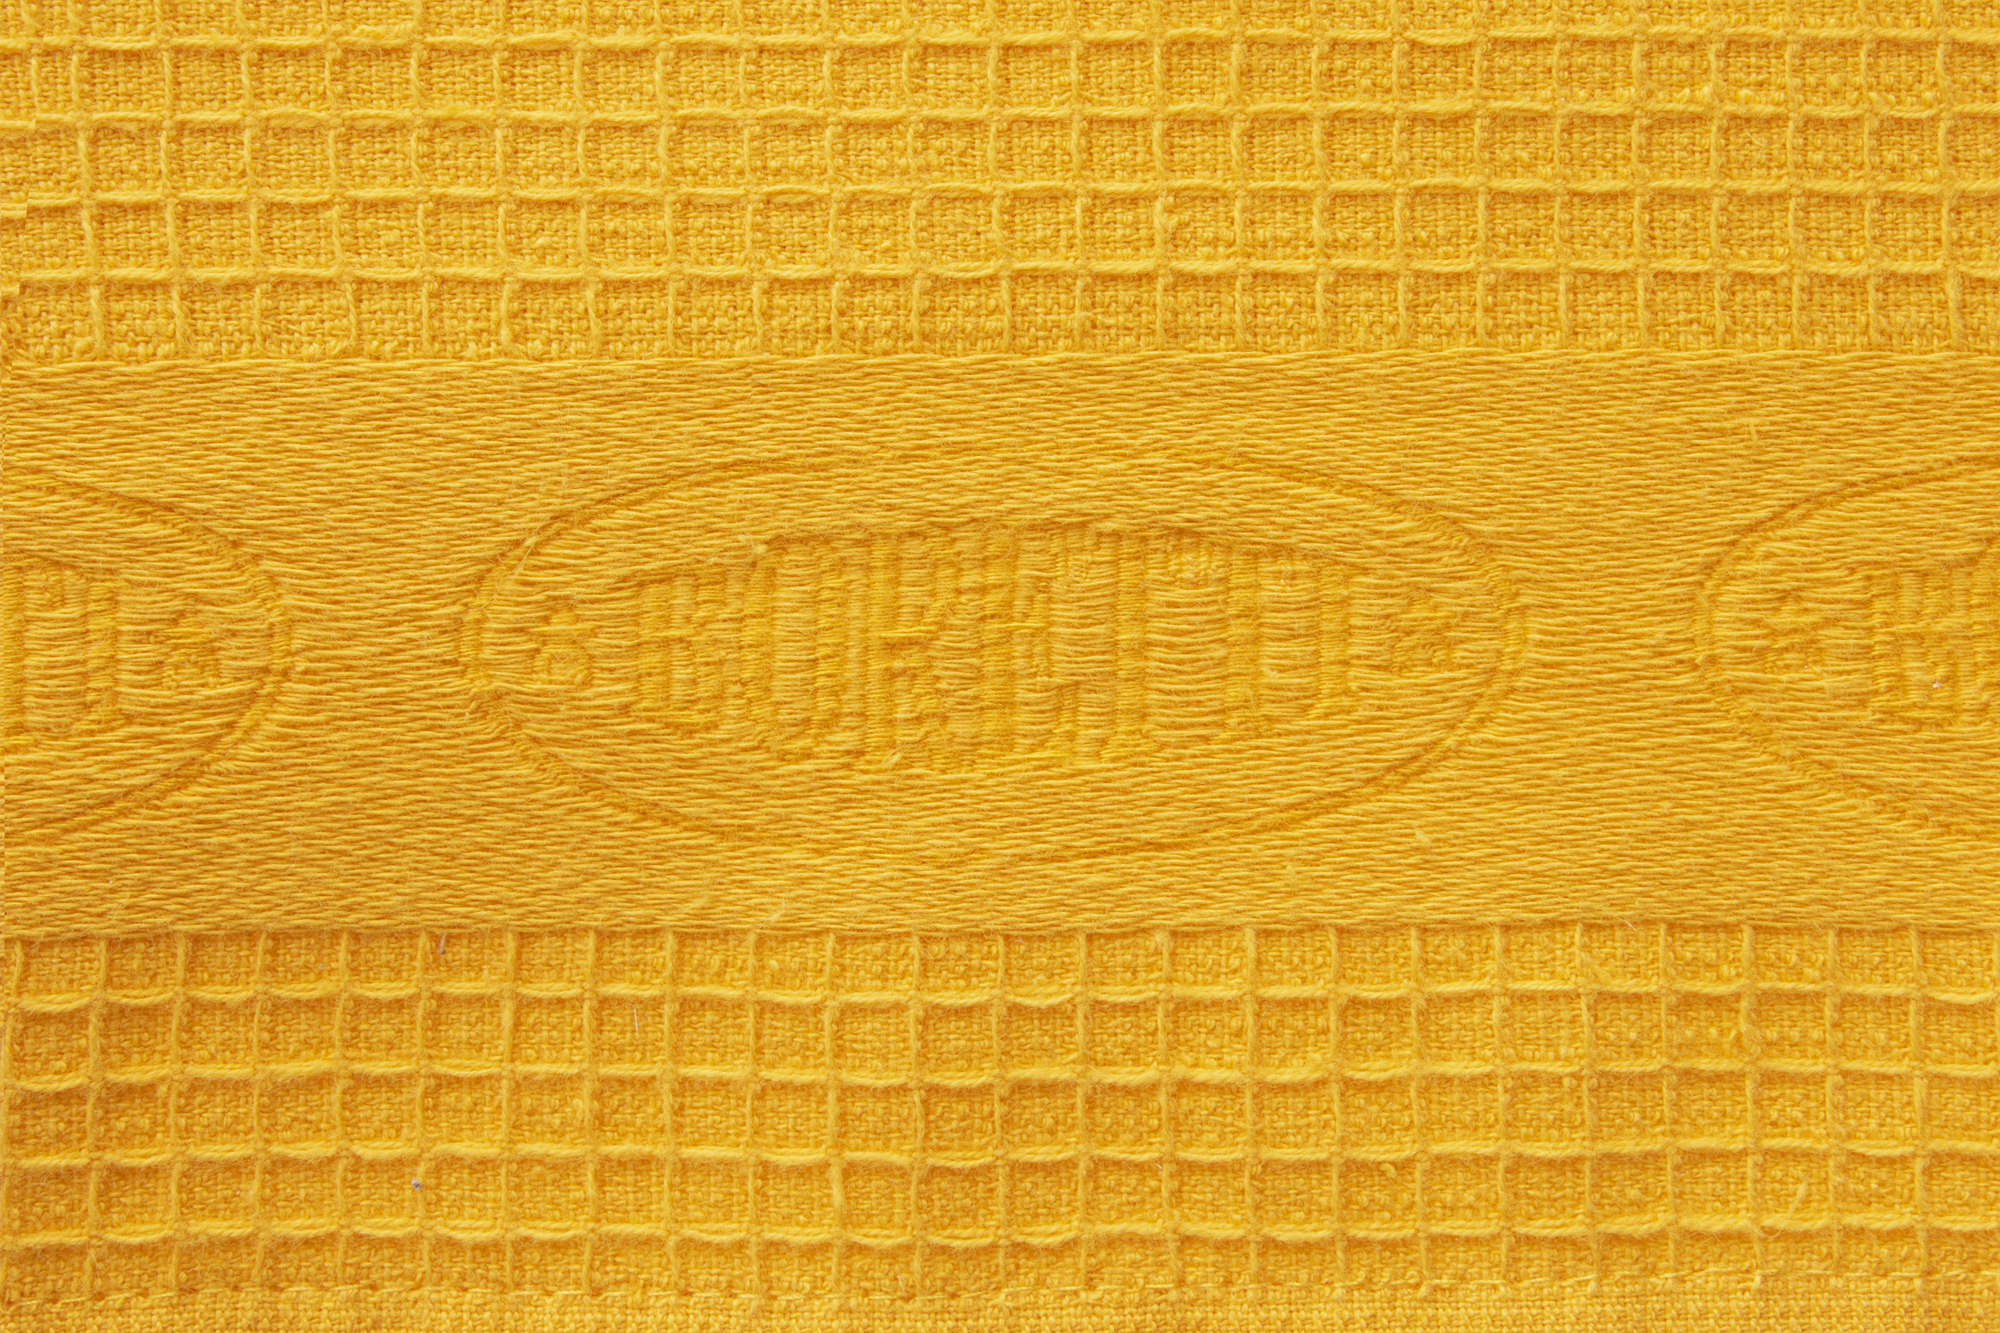 Butterscotch Yellow Gingham Stonewashed Waffle Kitchen Towel –